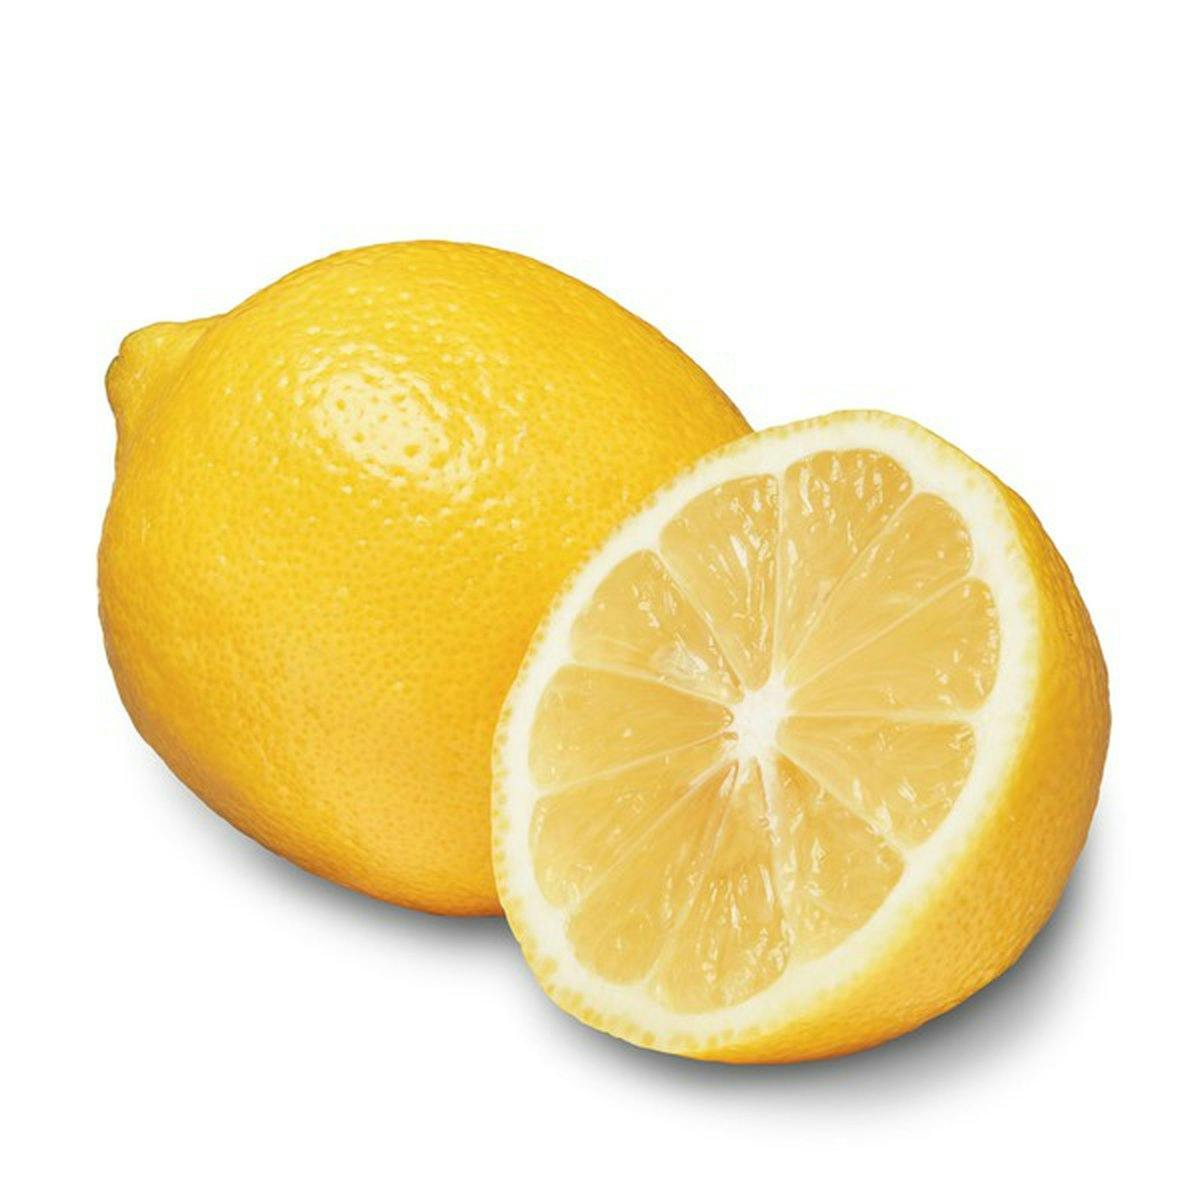 Juice from  a lemon